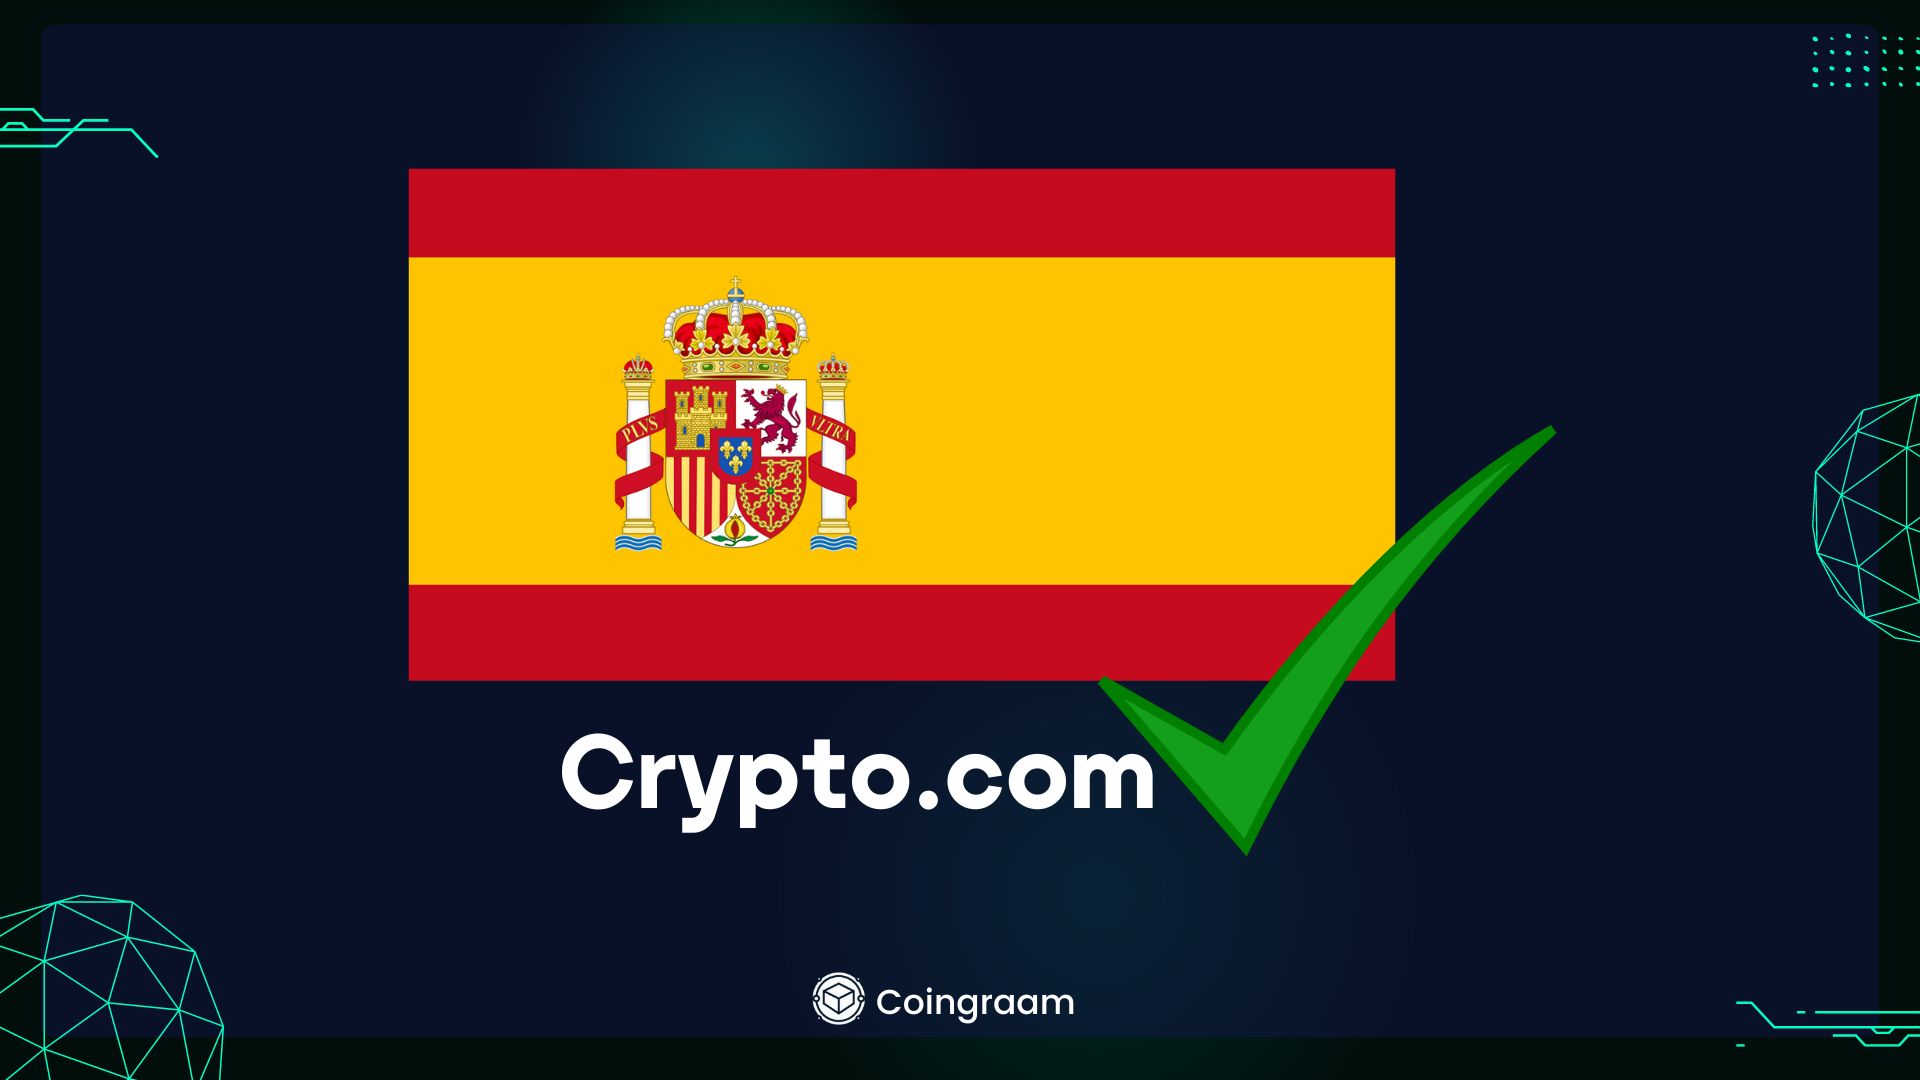 دریافت تاییدیه Crypto.com برای ارائه خدمات کریپتویی در اسپانیا